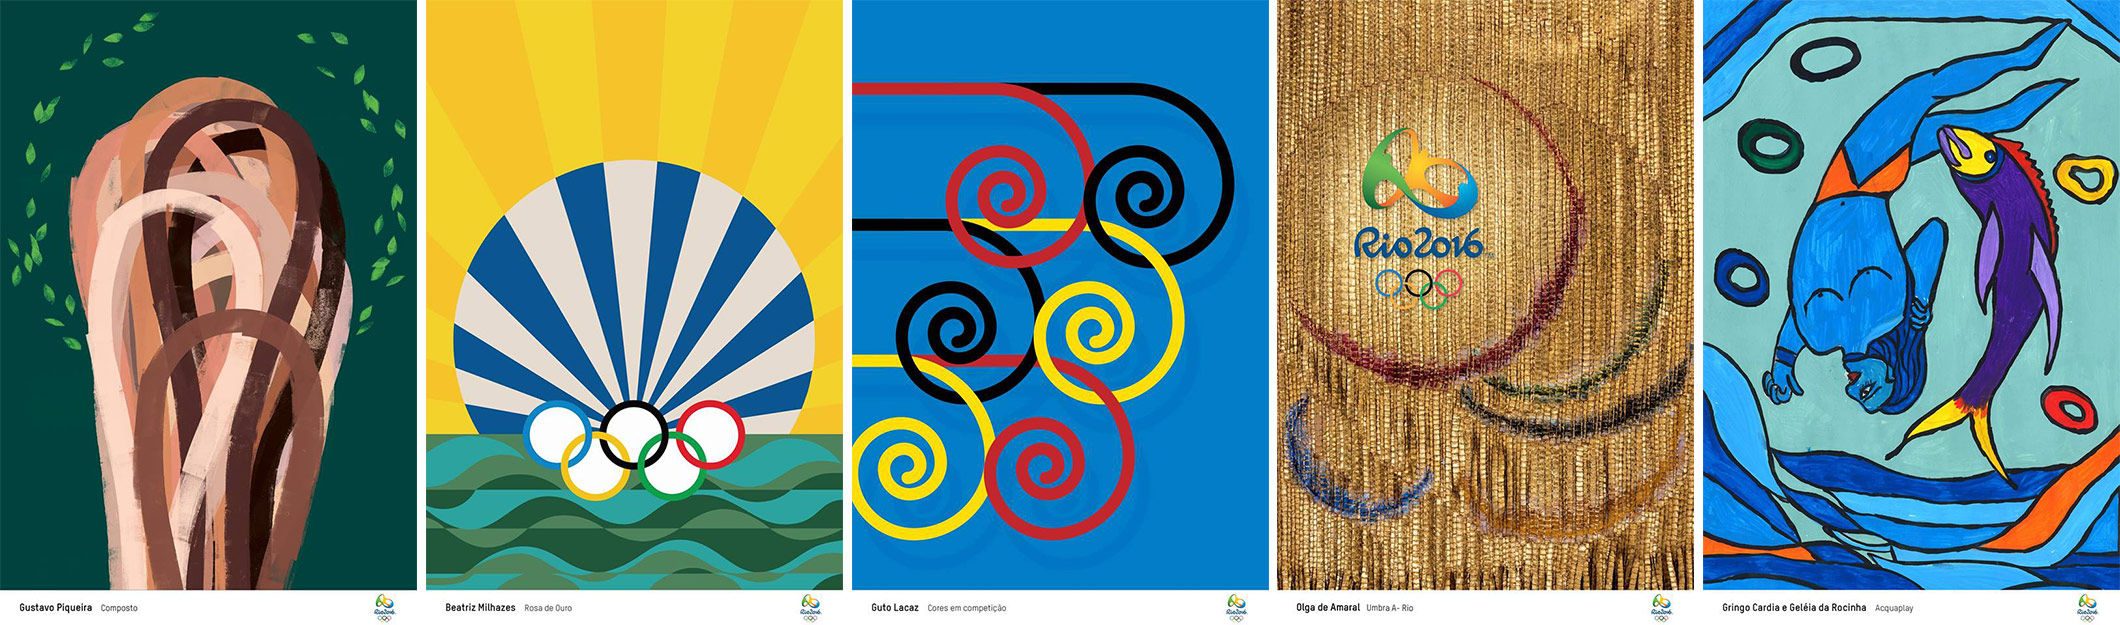 Poster-poster itu sebagian besar berwarna kuning terang, hijau, merah, dan biru serta berfokus pada simbol klasik Rio. Foto dari Olympic.org 